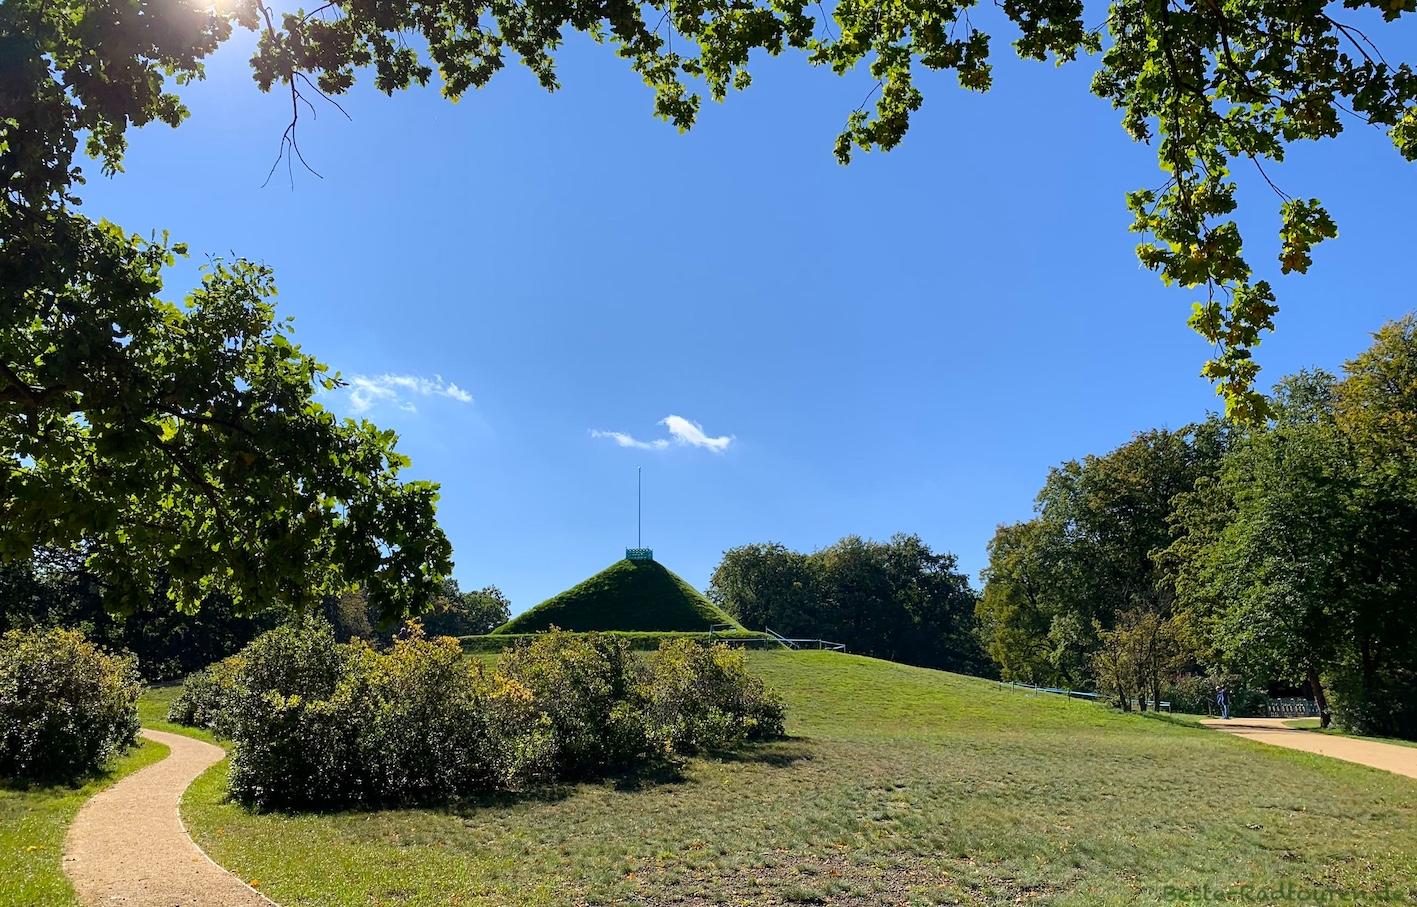 Pyramide im Branitzer Park, Cottbus